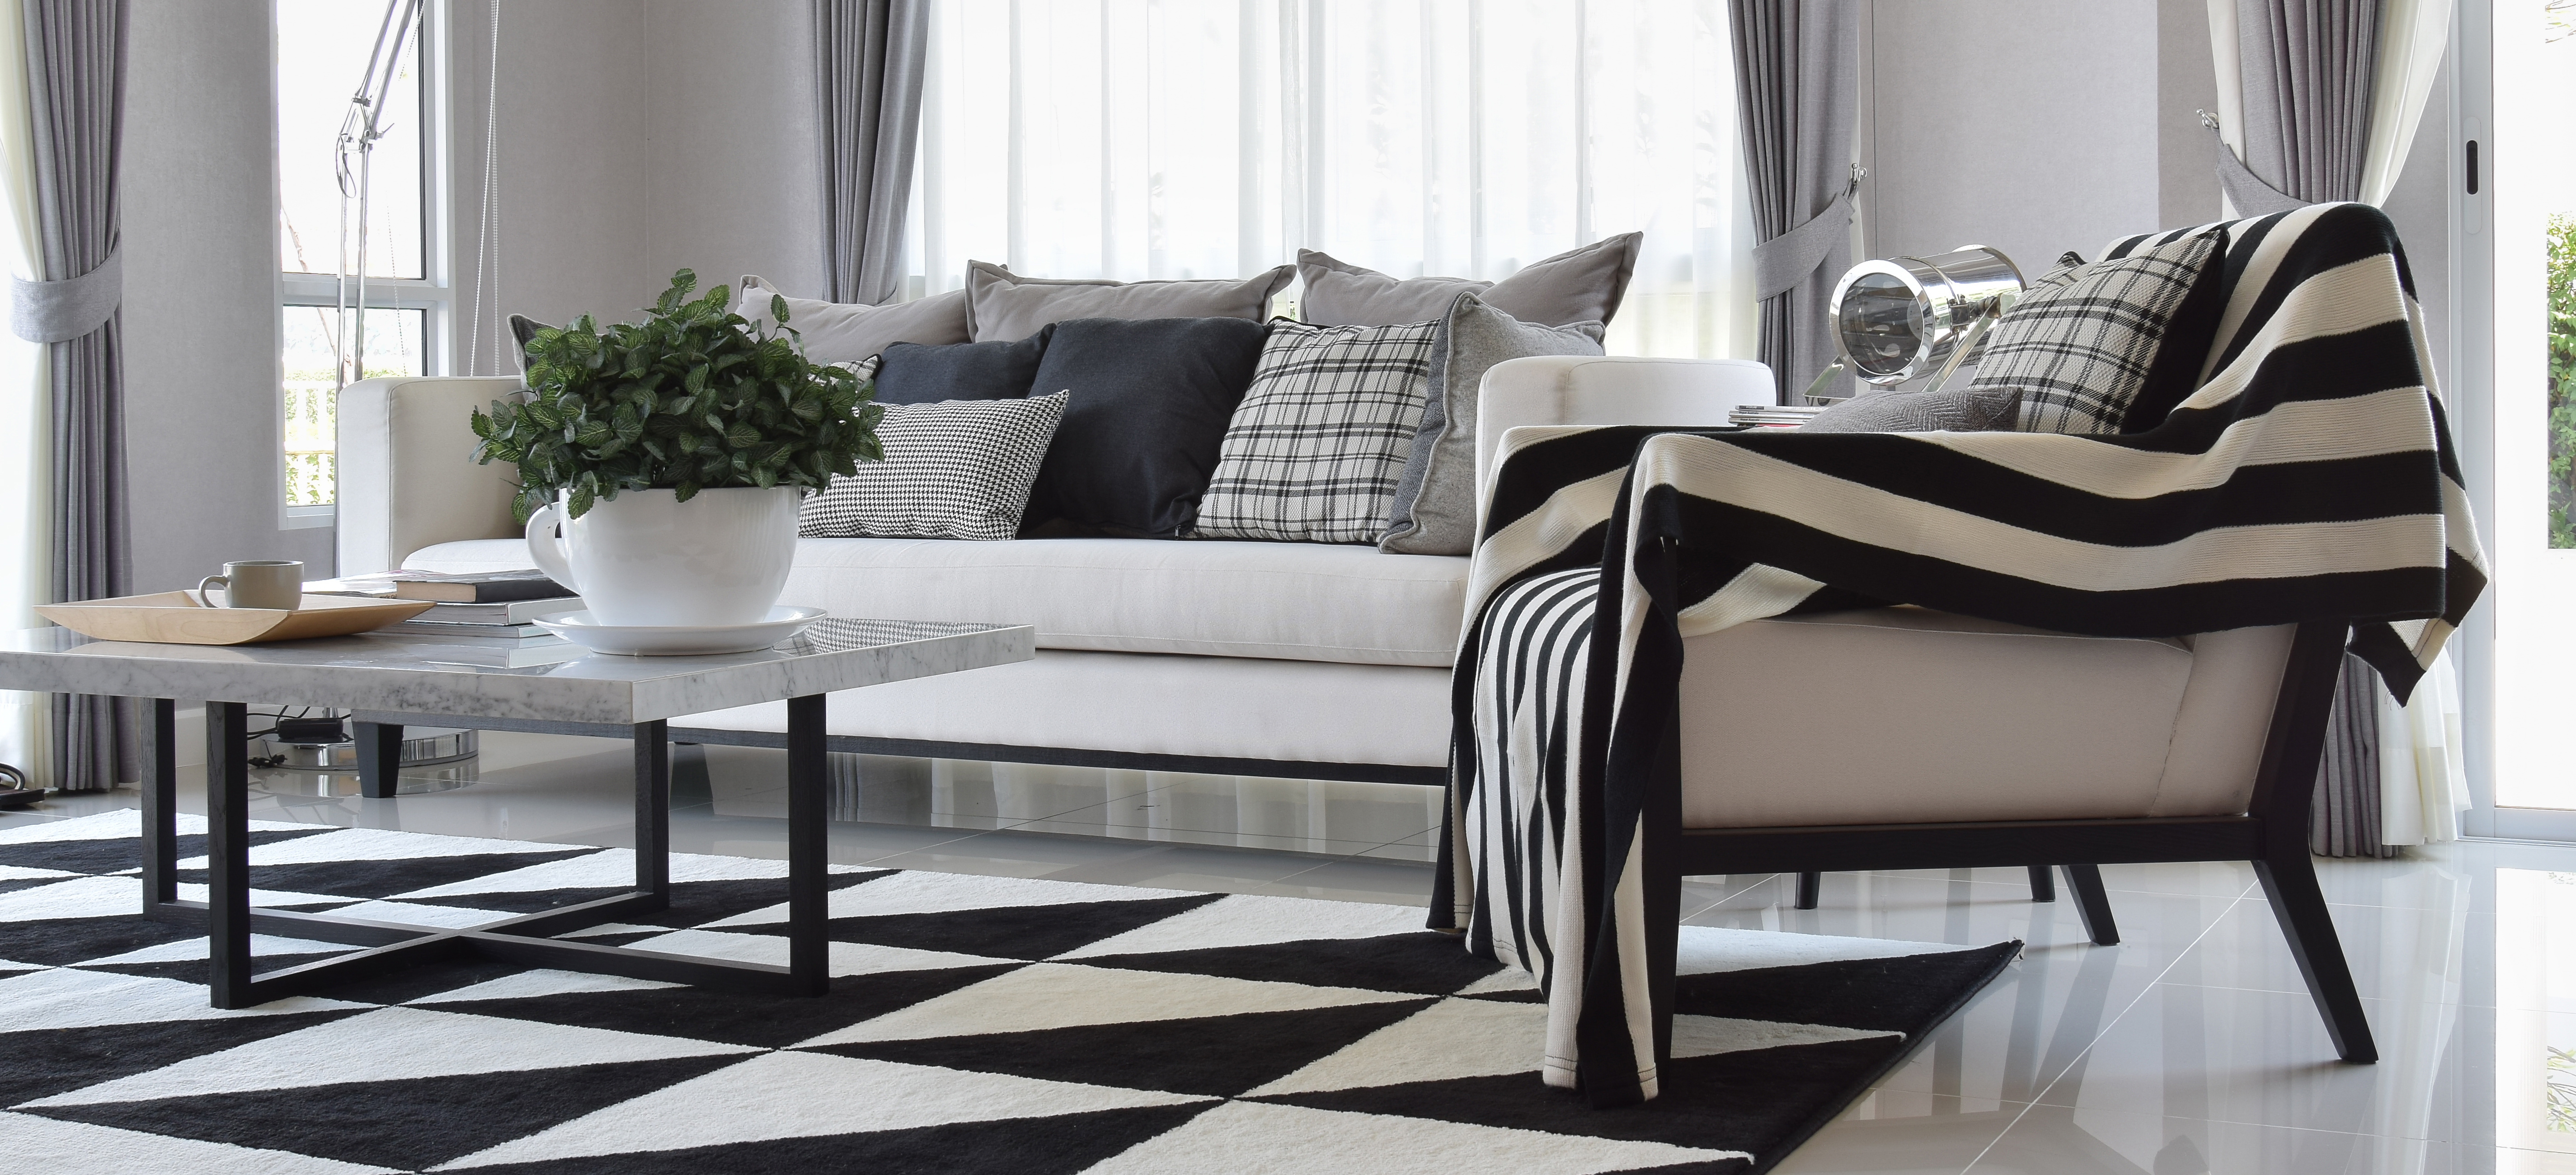 modern-white-living-room